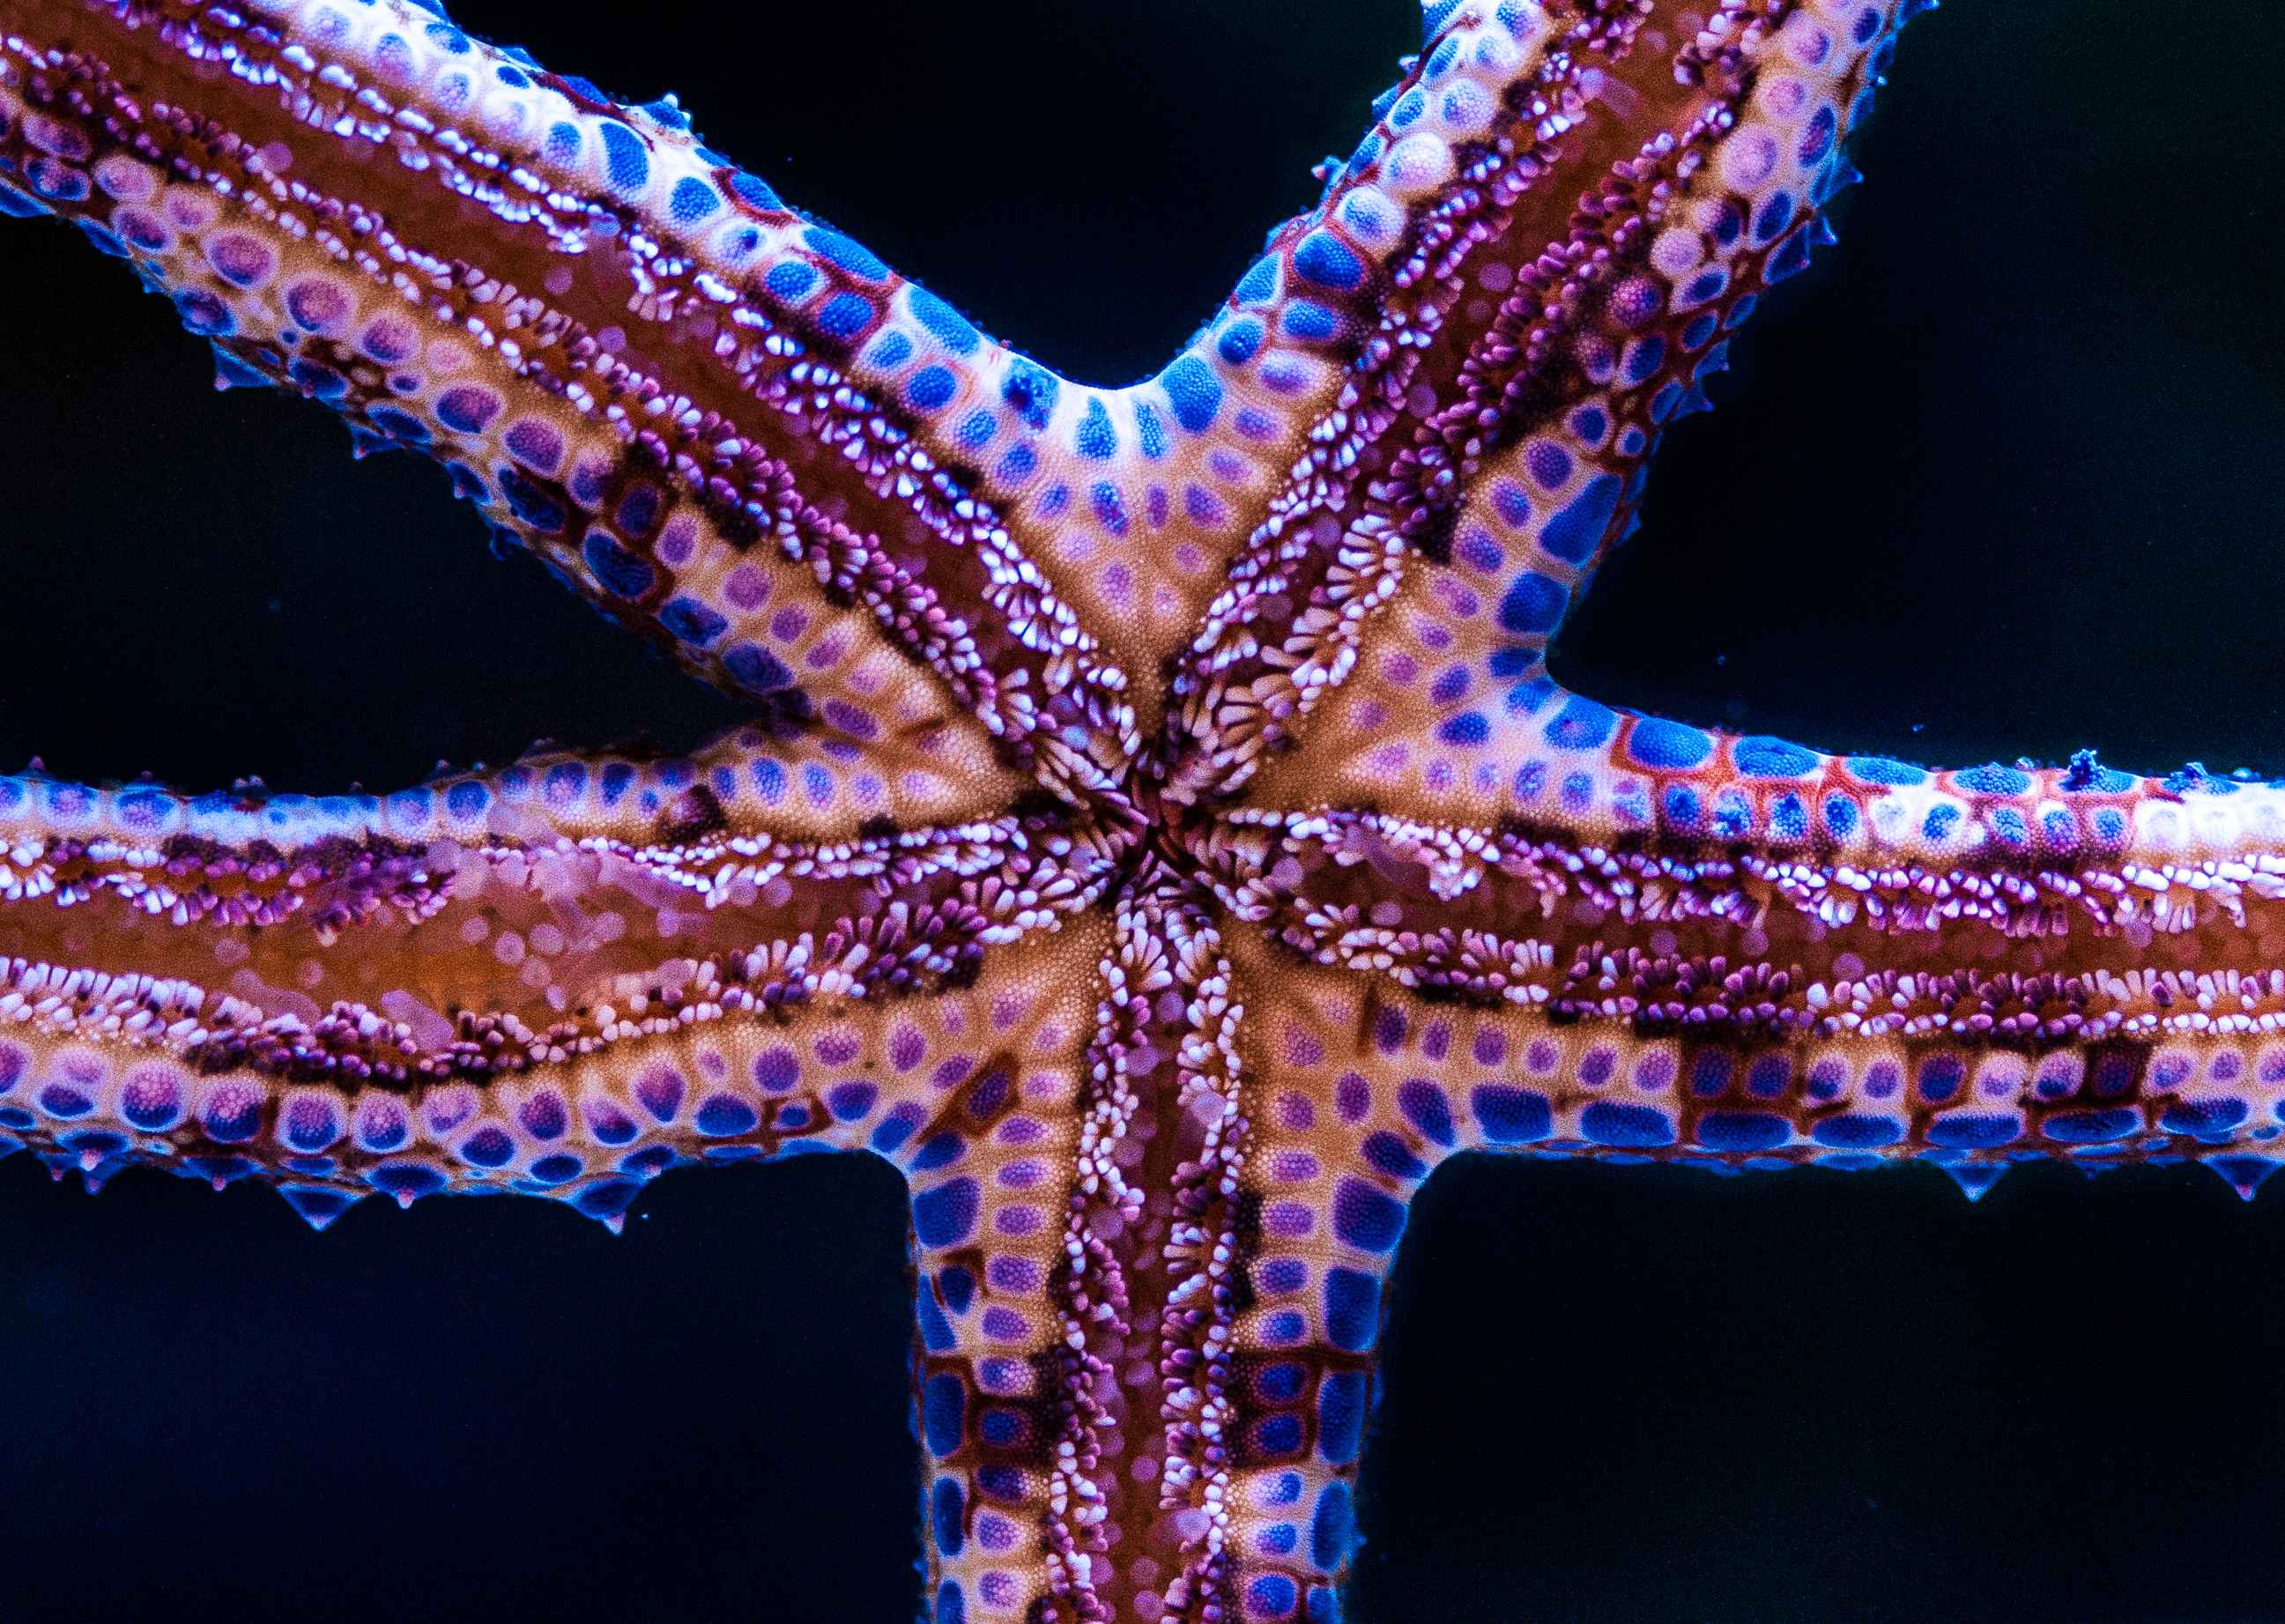 animals, starfish, underwater world, tentacles